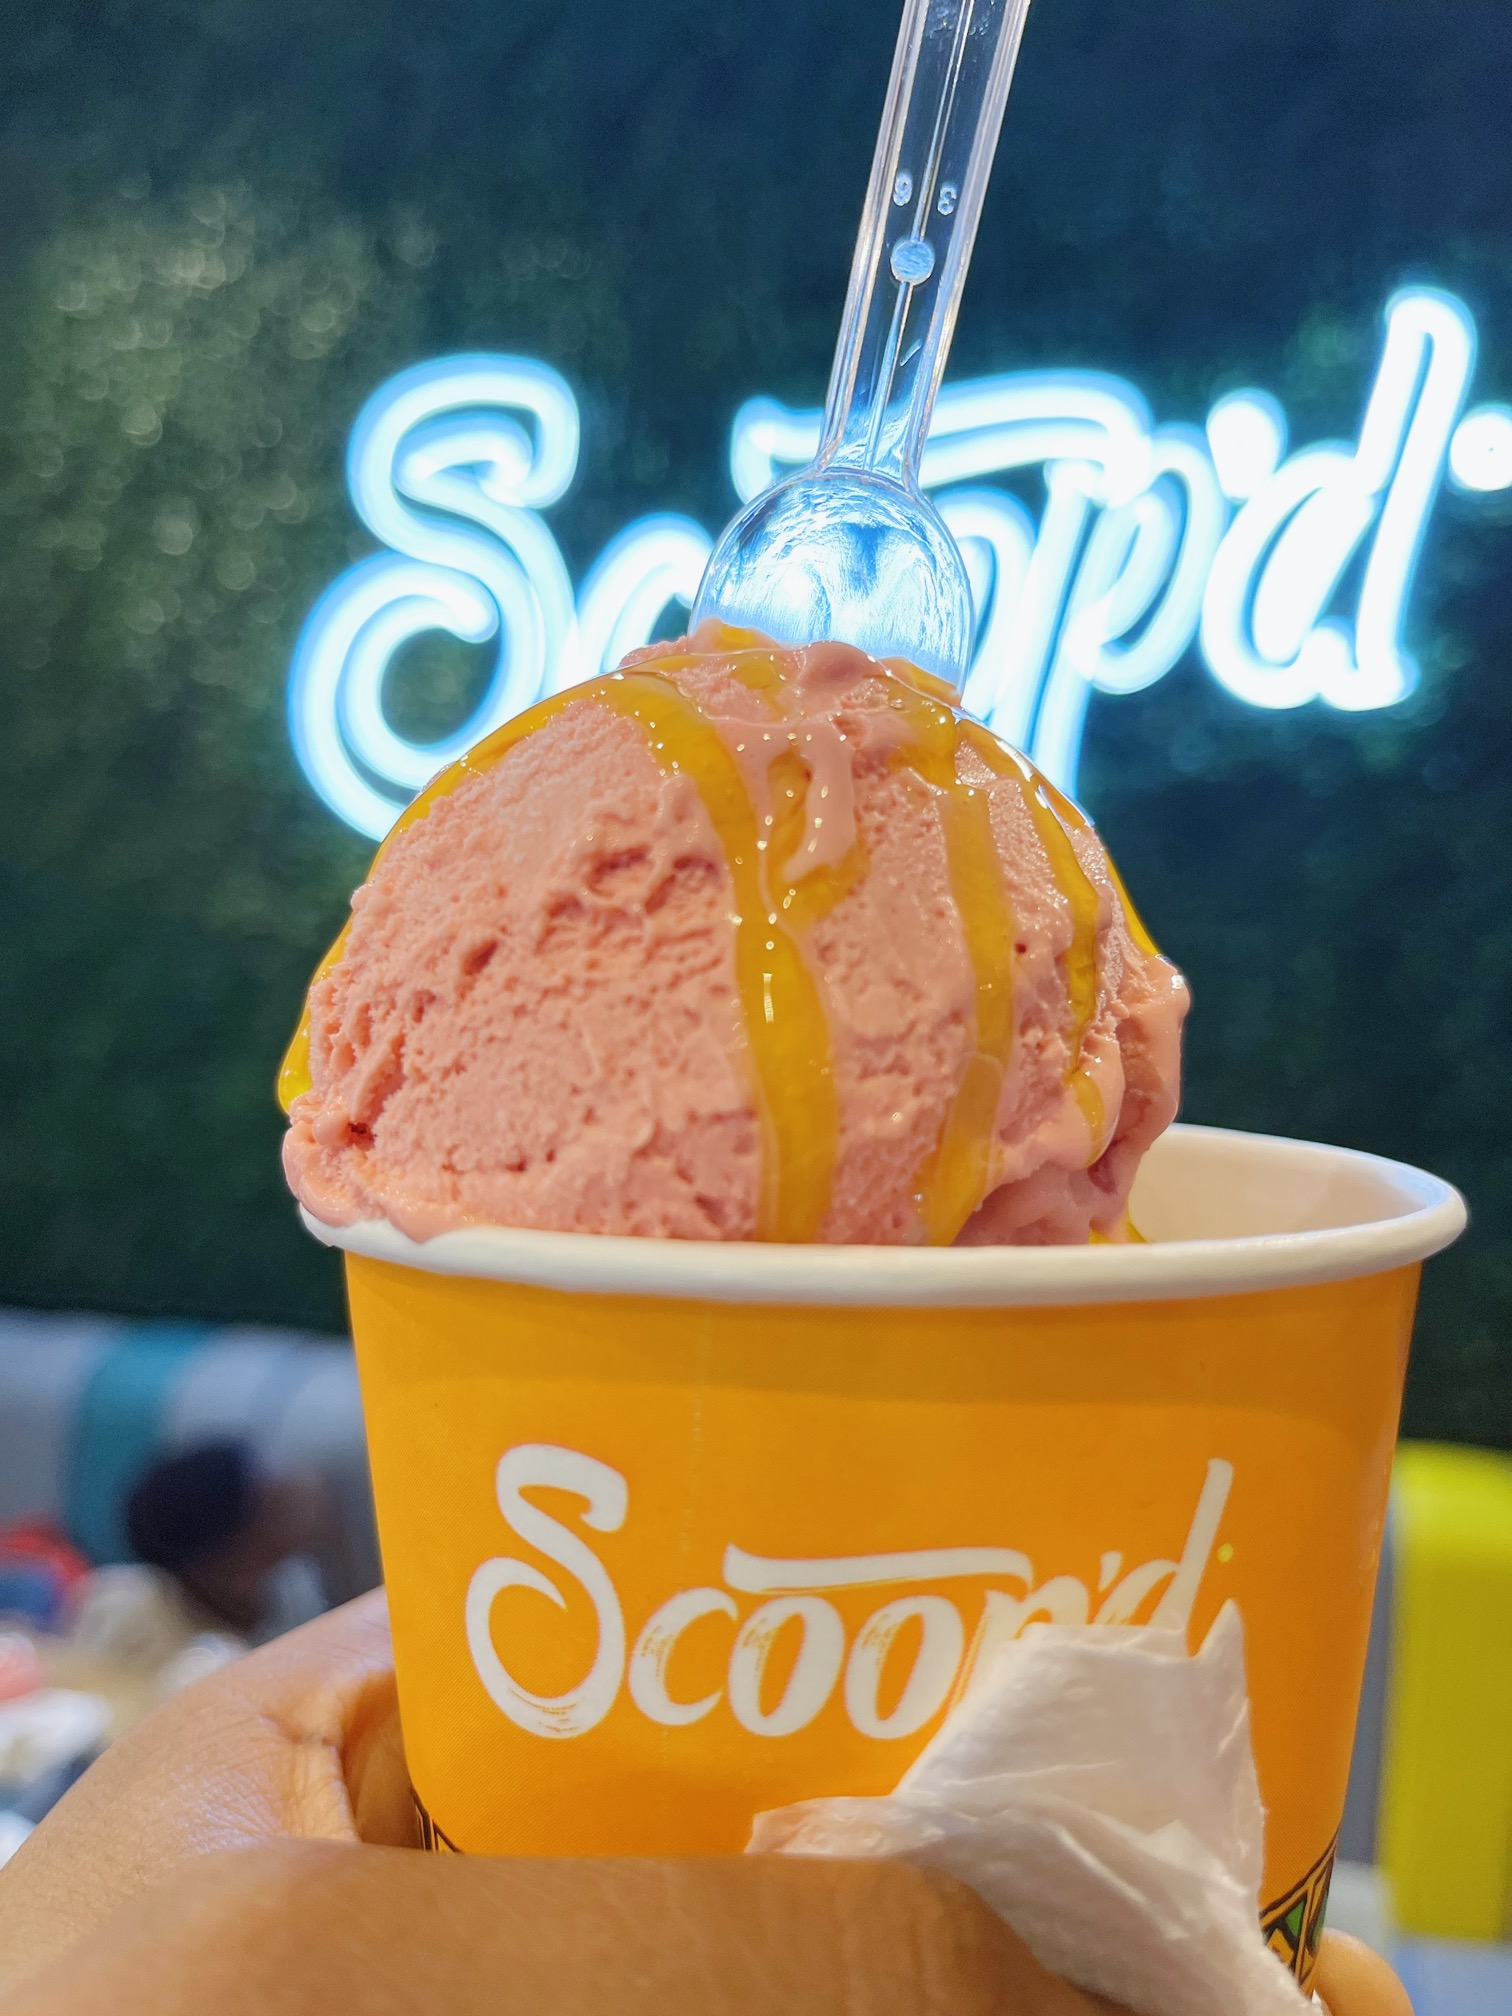 Scoop'd ice cream bar